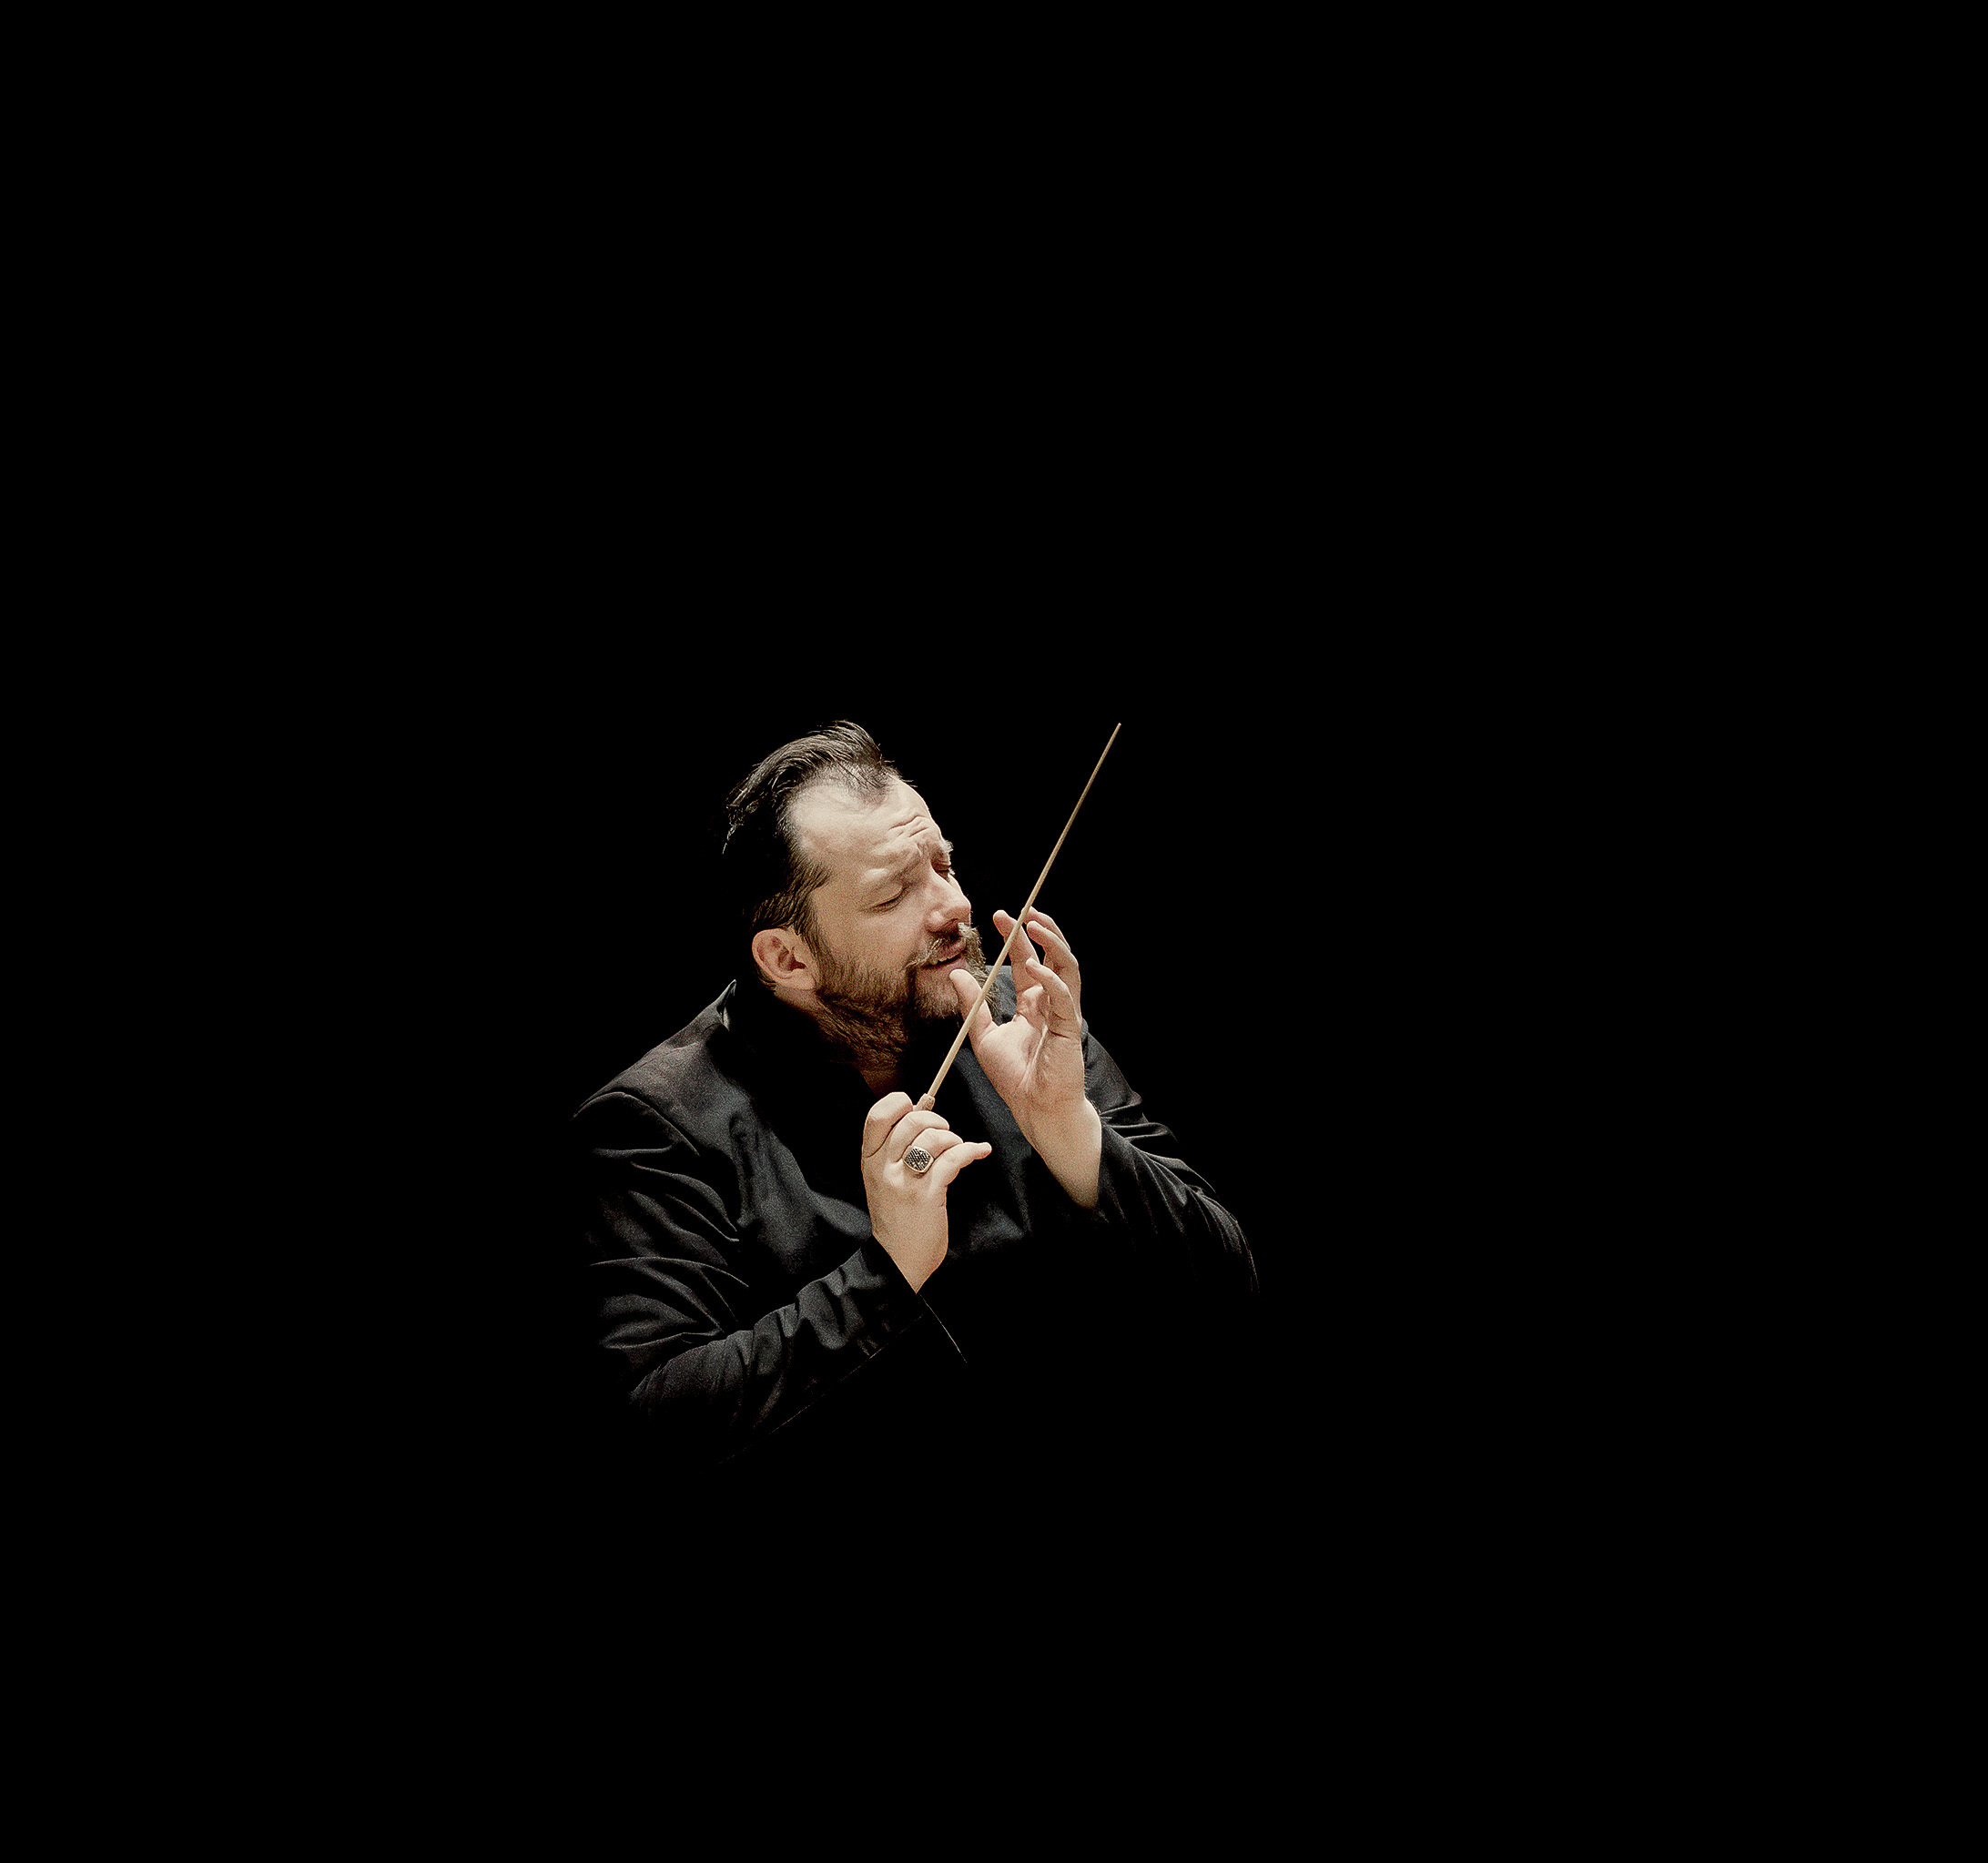 El director de orquesta Letn, durante un concierto en Boston